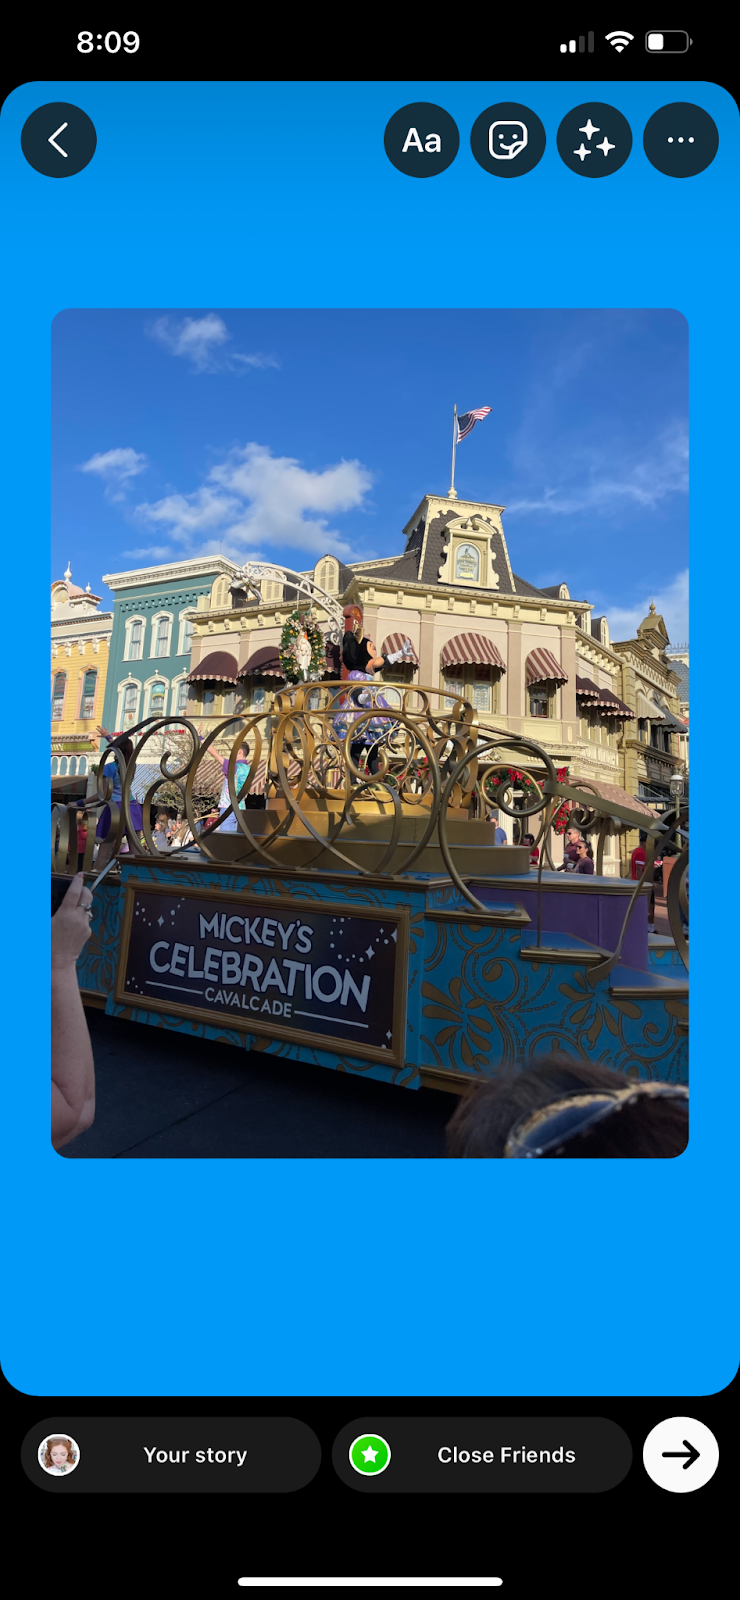 Foto de Disney con fondo azul en Instagram